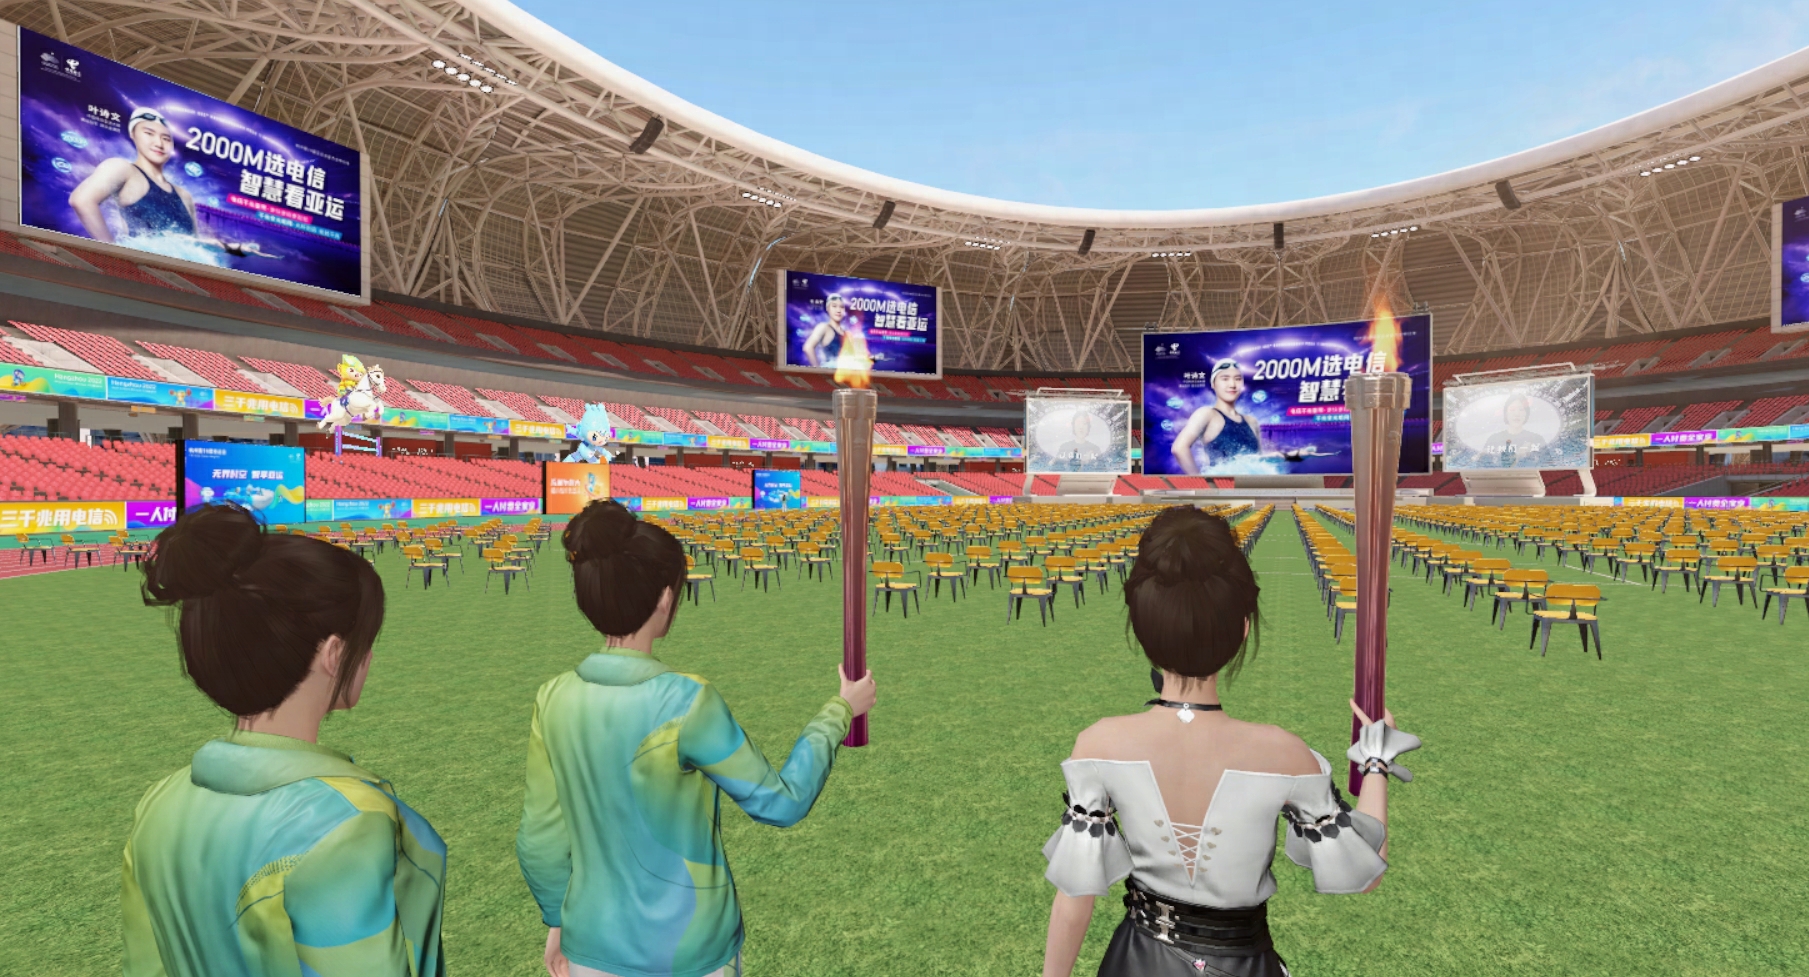 图片展示了三位身穿传统服饰的动画人物，手持火炬，在一个设有大屏幕的体育场内，似乎正在进行某种仪式或庆典活动。